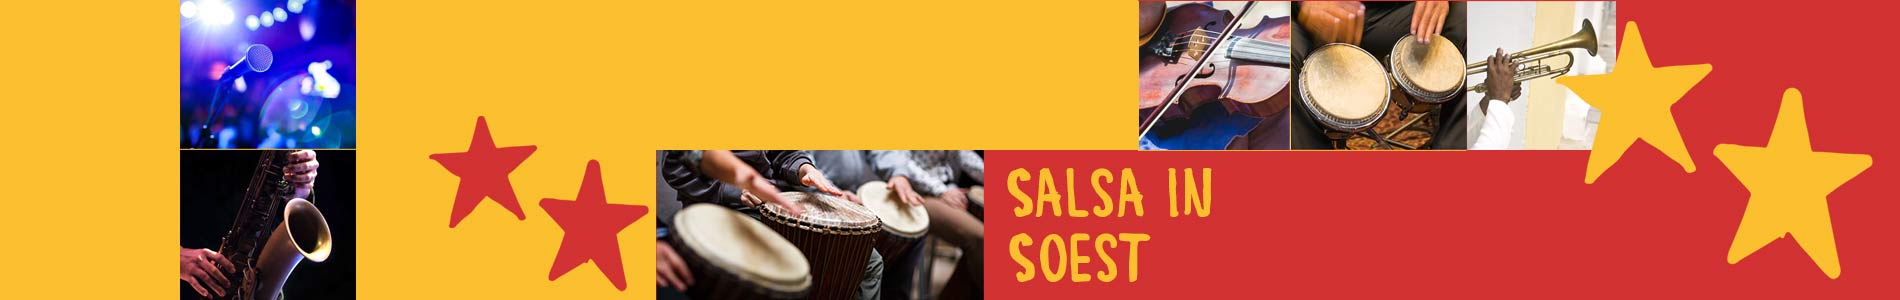 Salsa in Soest – Salsa lernen und tanzen, Tanzkurse, Partys, Veranstaltungen